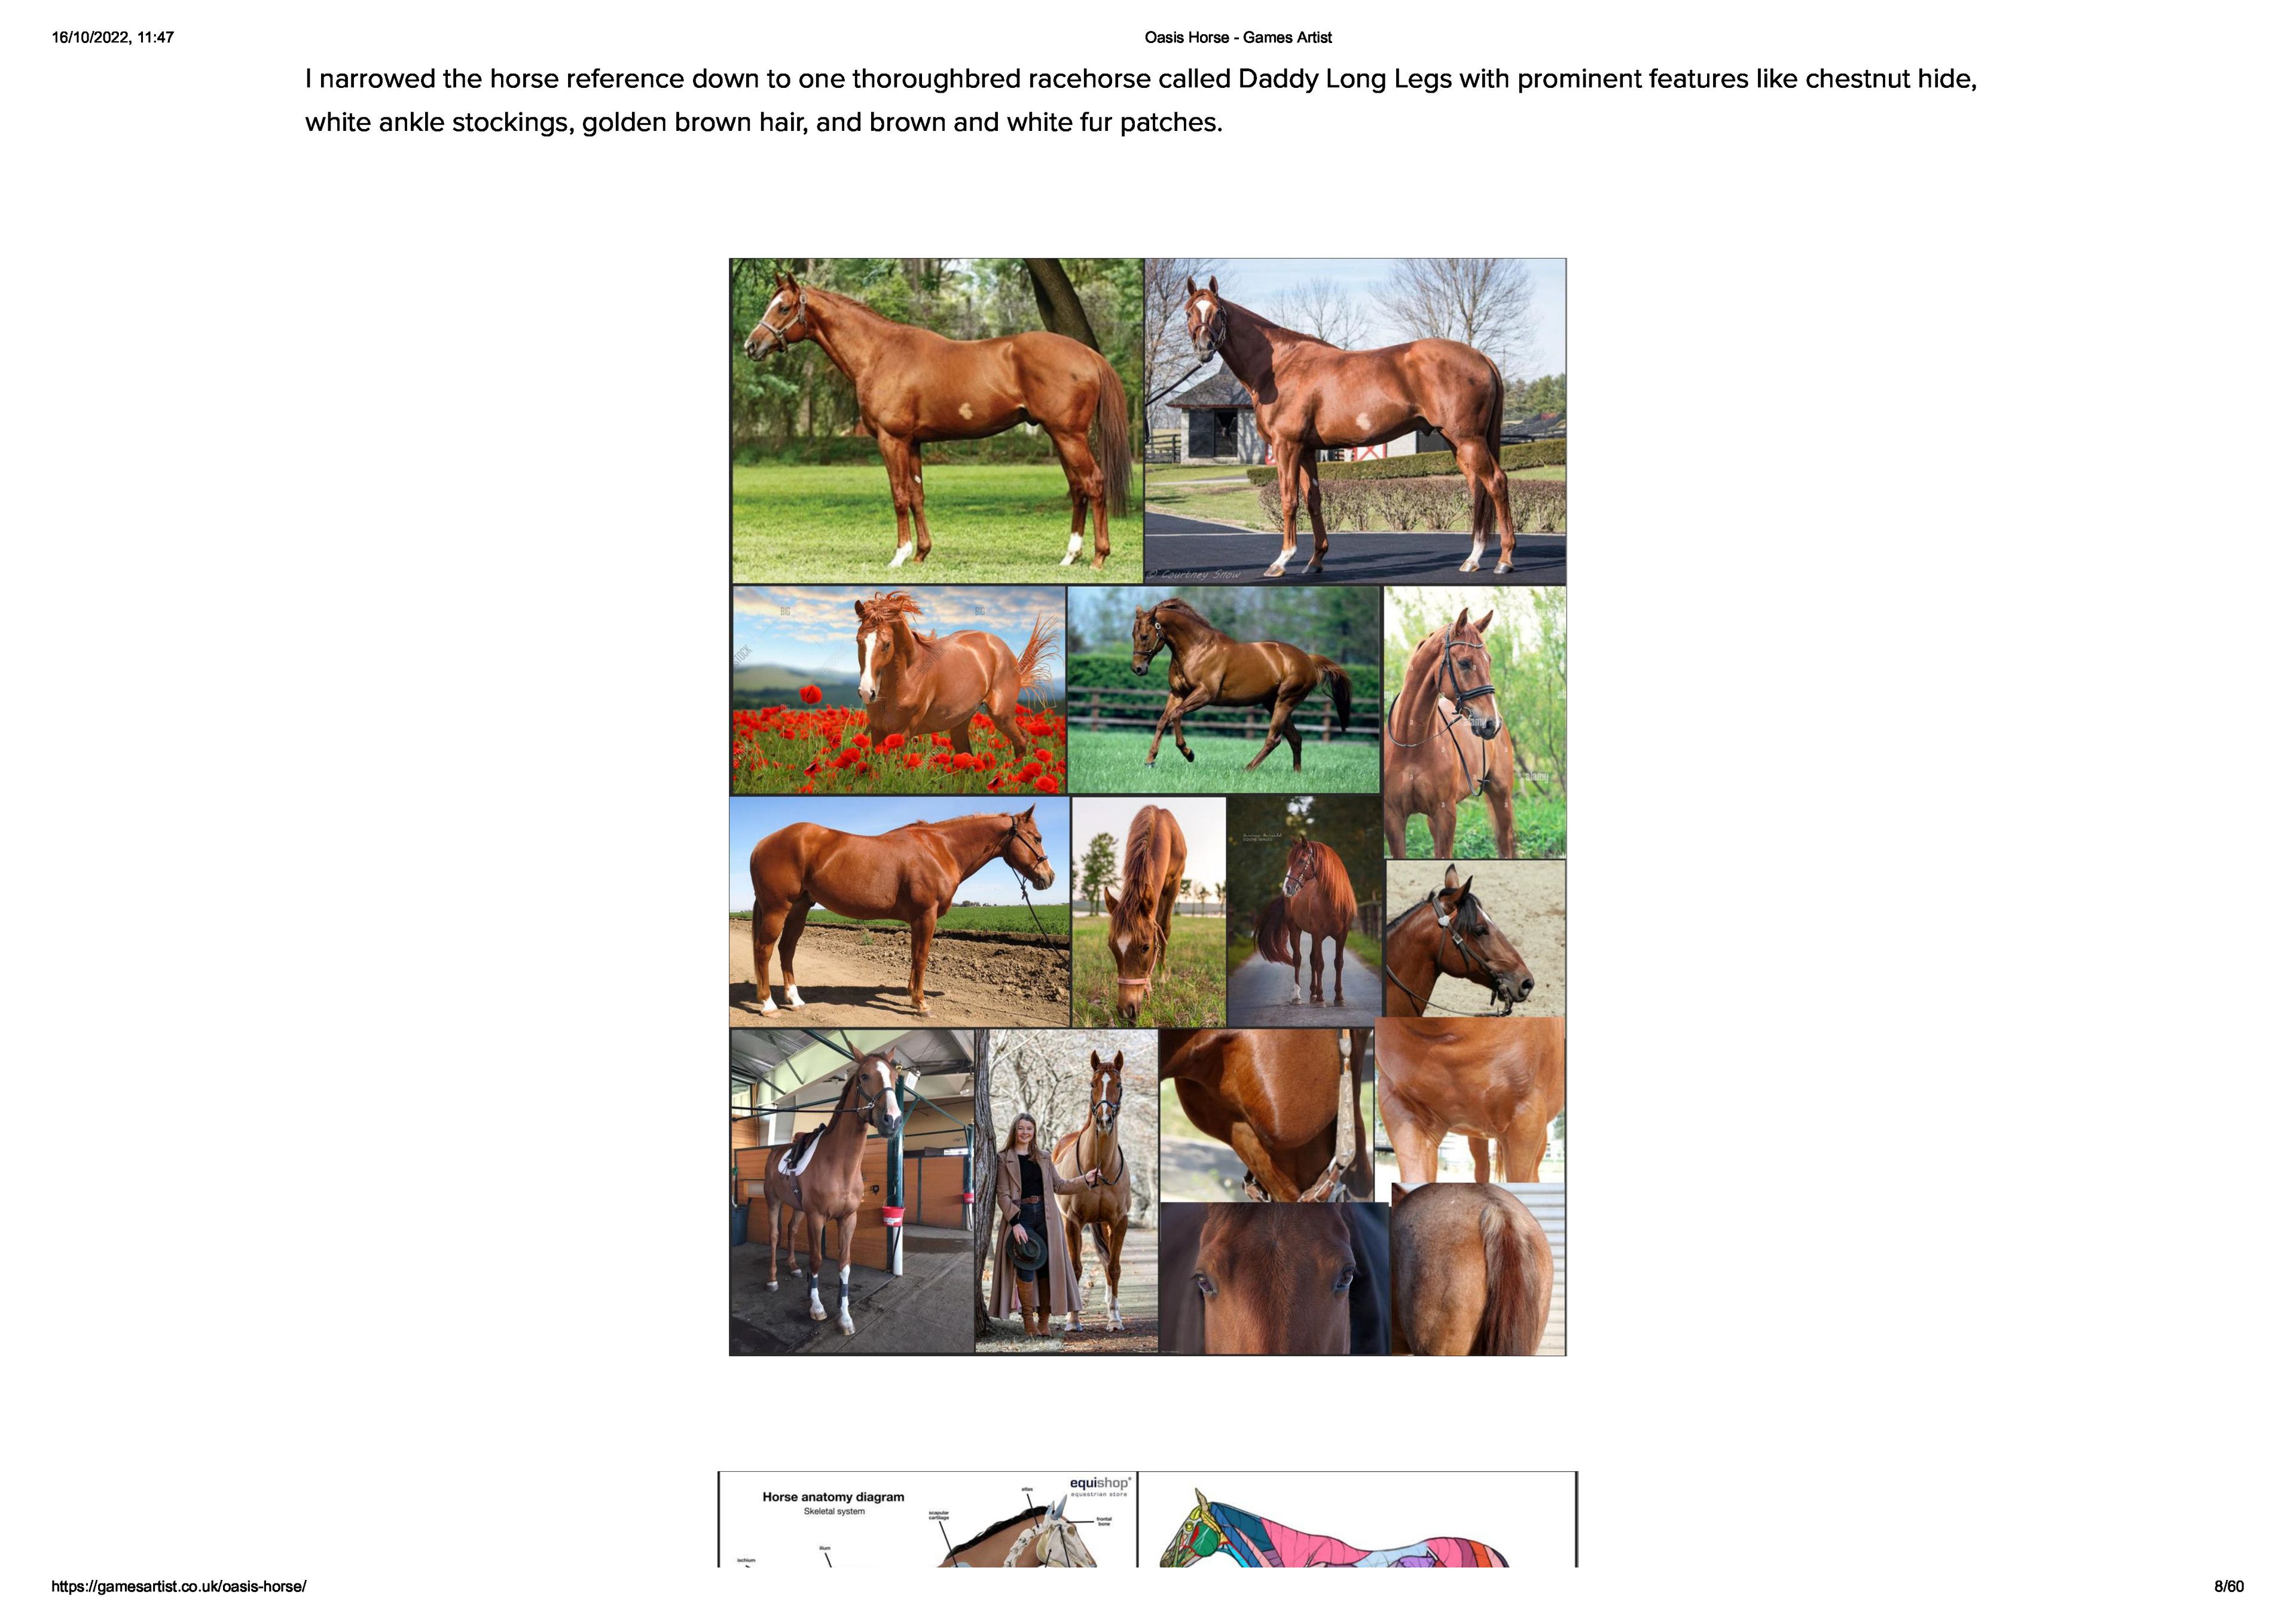 Horse anatomy - diagrams of horse body parts - EQUISHOP Equestrian Shop